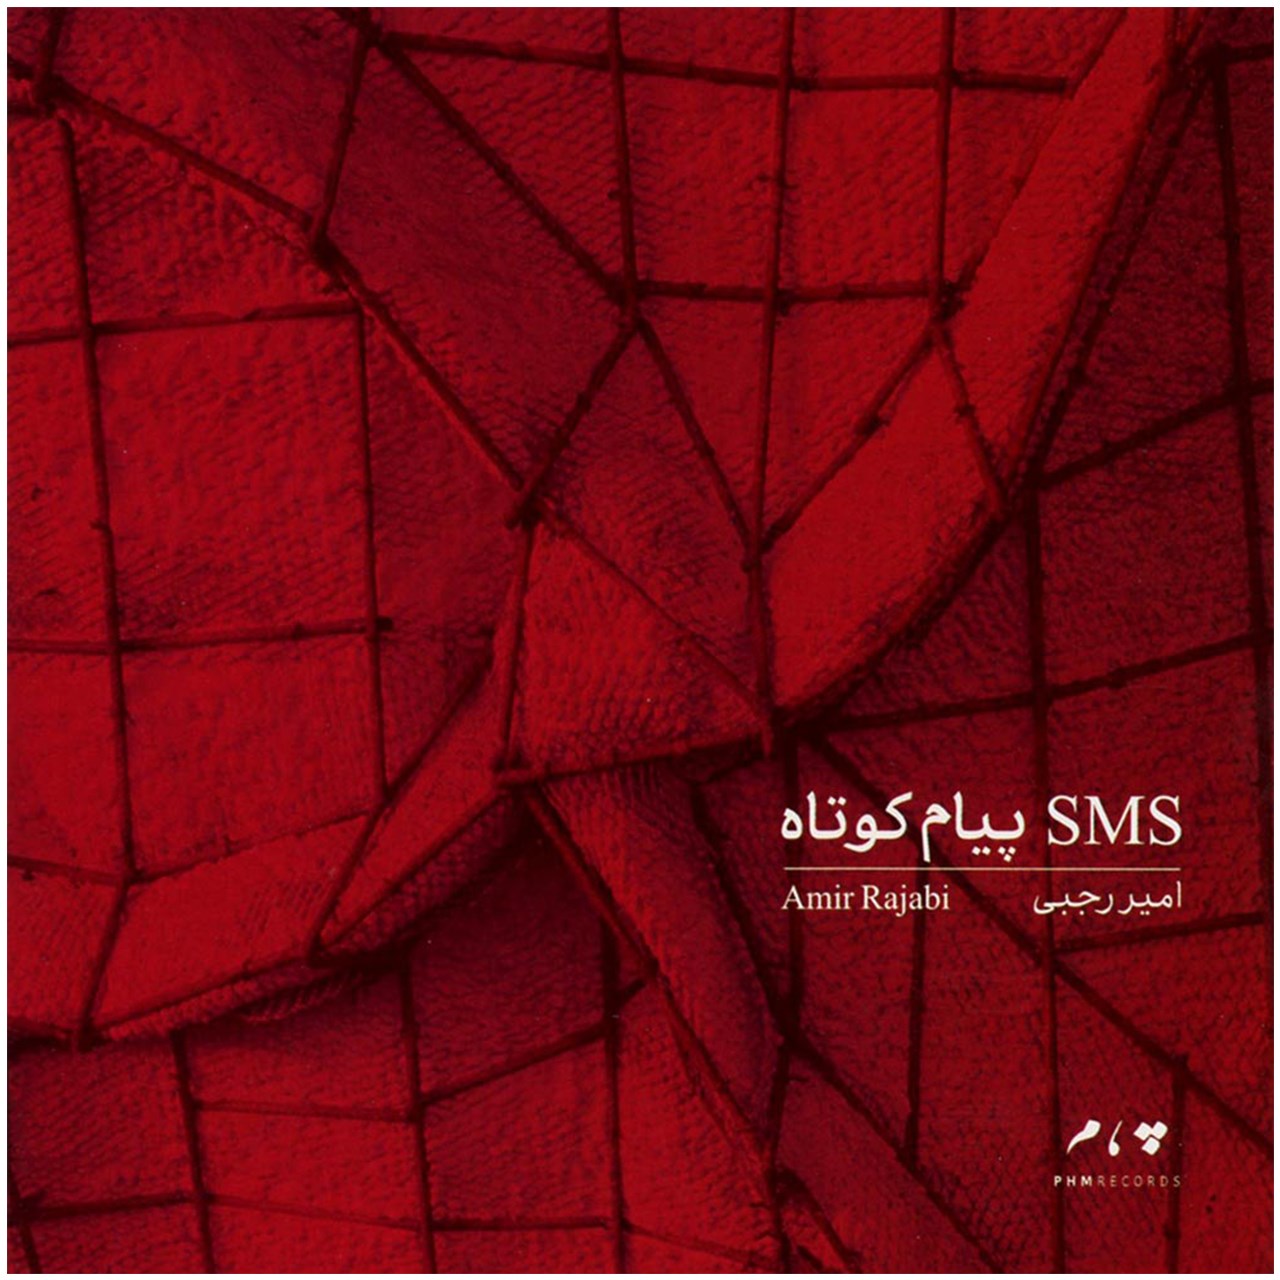 آلبوم موسیقی پیام کوتاه (SMS) اثر امیر رجبی